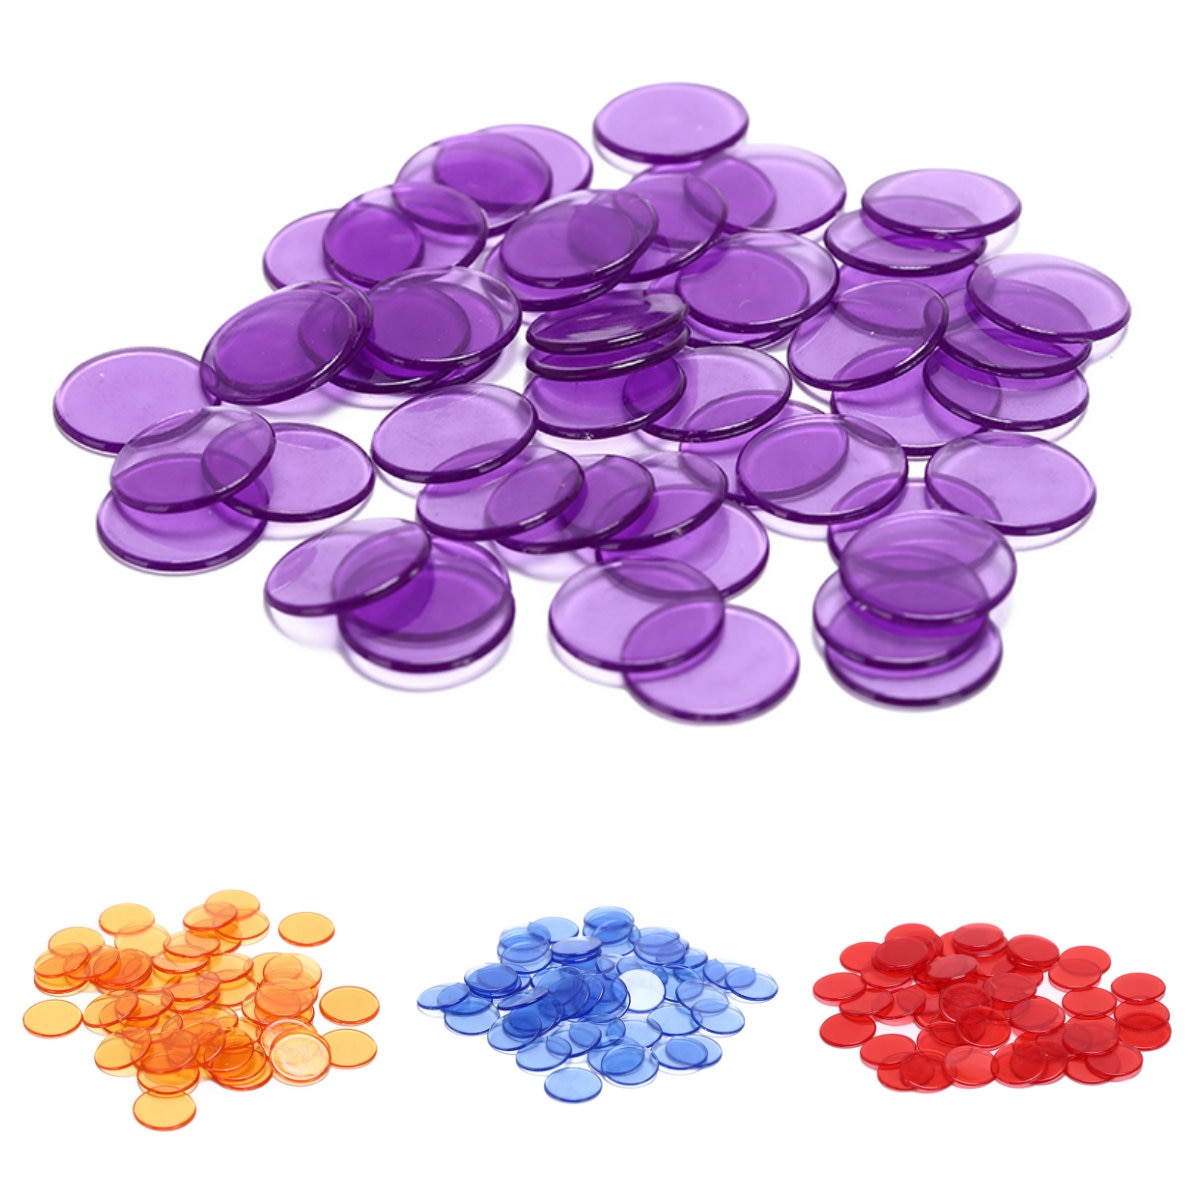 100 stk tæller bingo chips markører til bingo spil kort plast bingo chips til klasseværelset og karneval bingo spil 5 farver